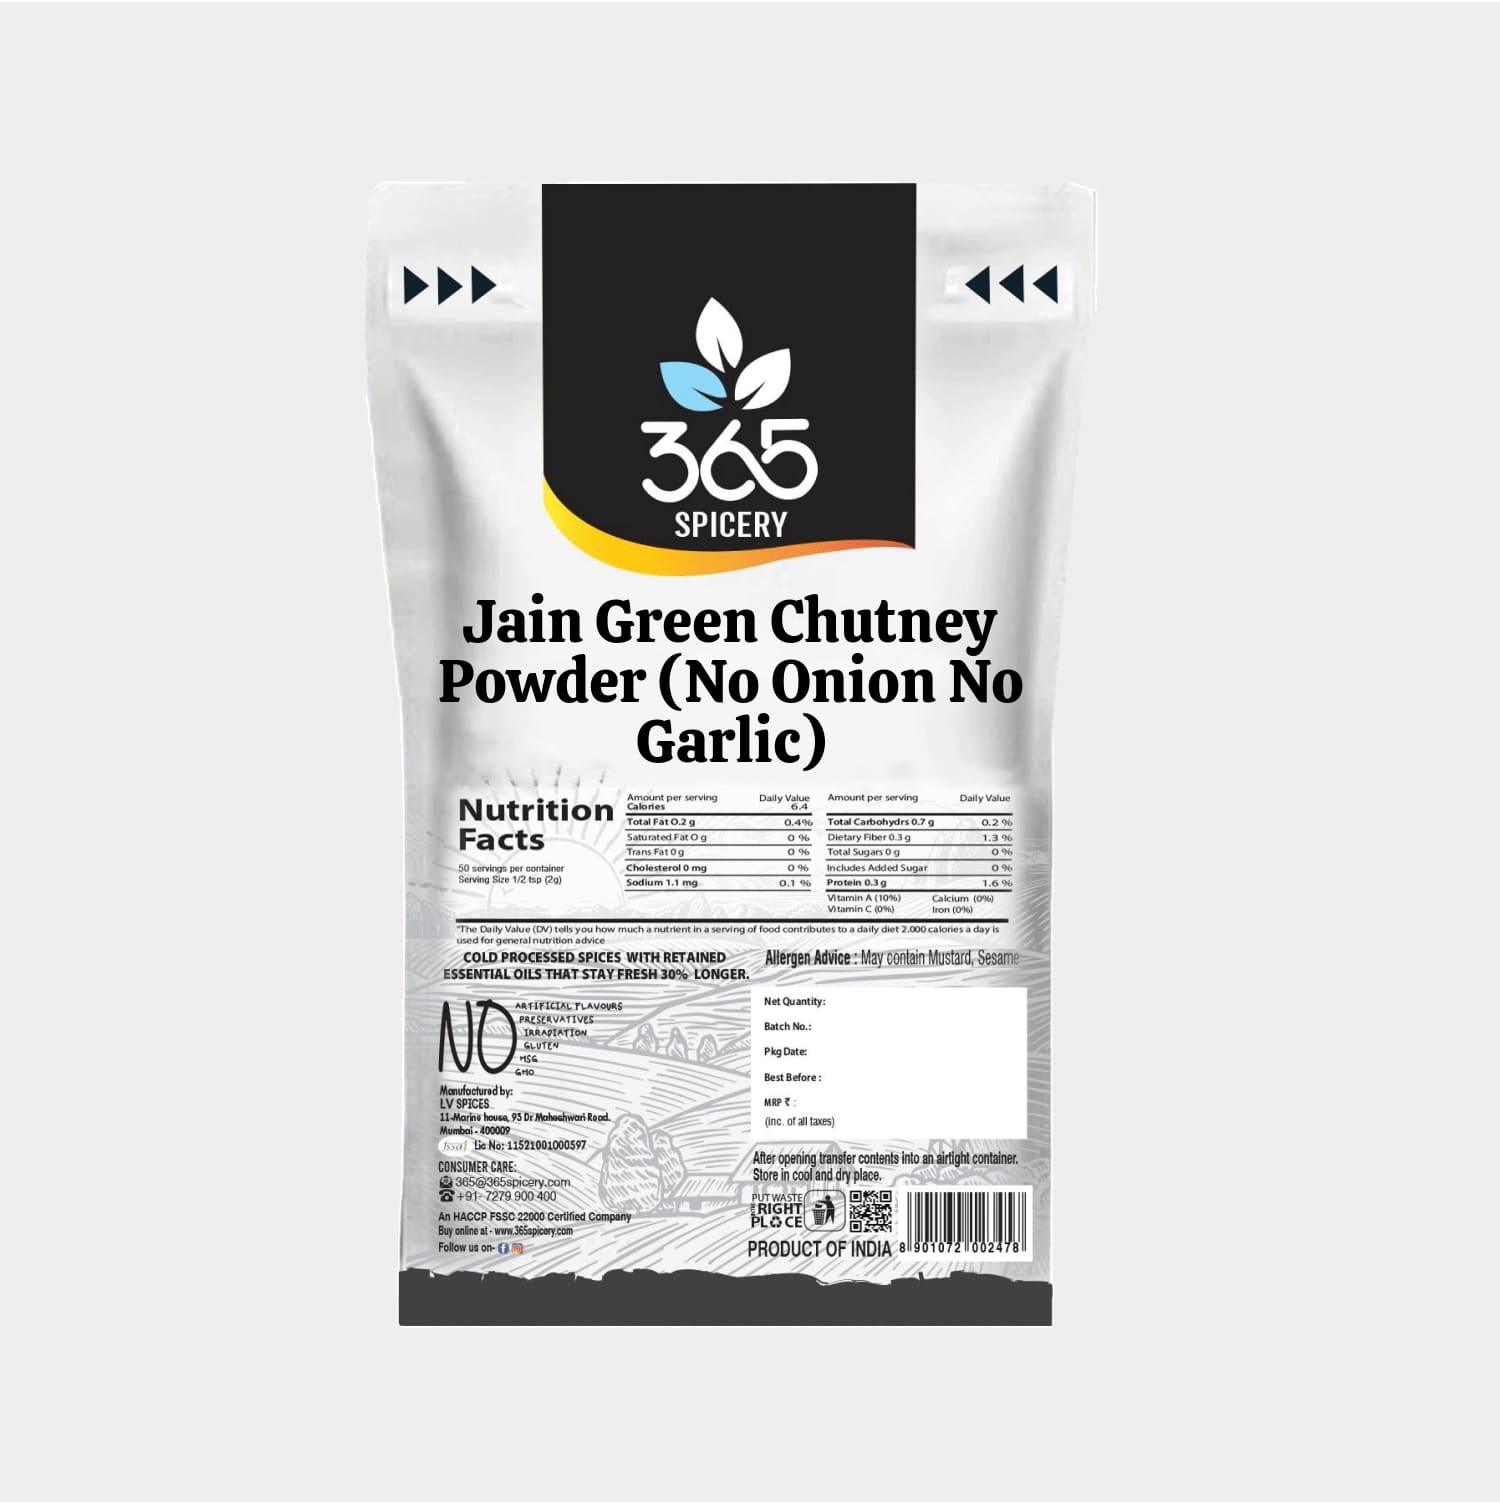 Jain Green Chutney Powder (No Onion No Garlic)